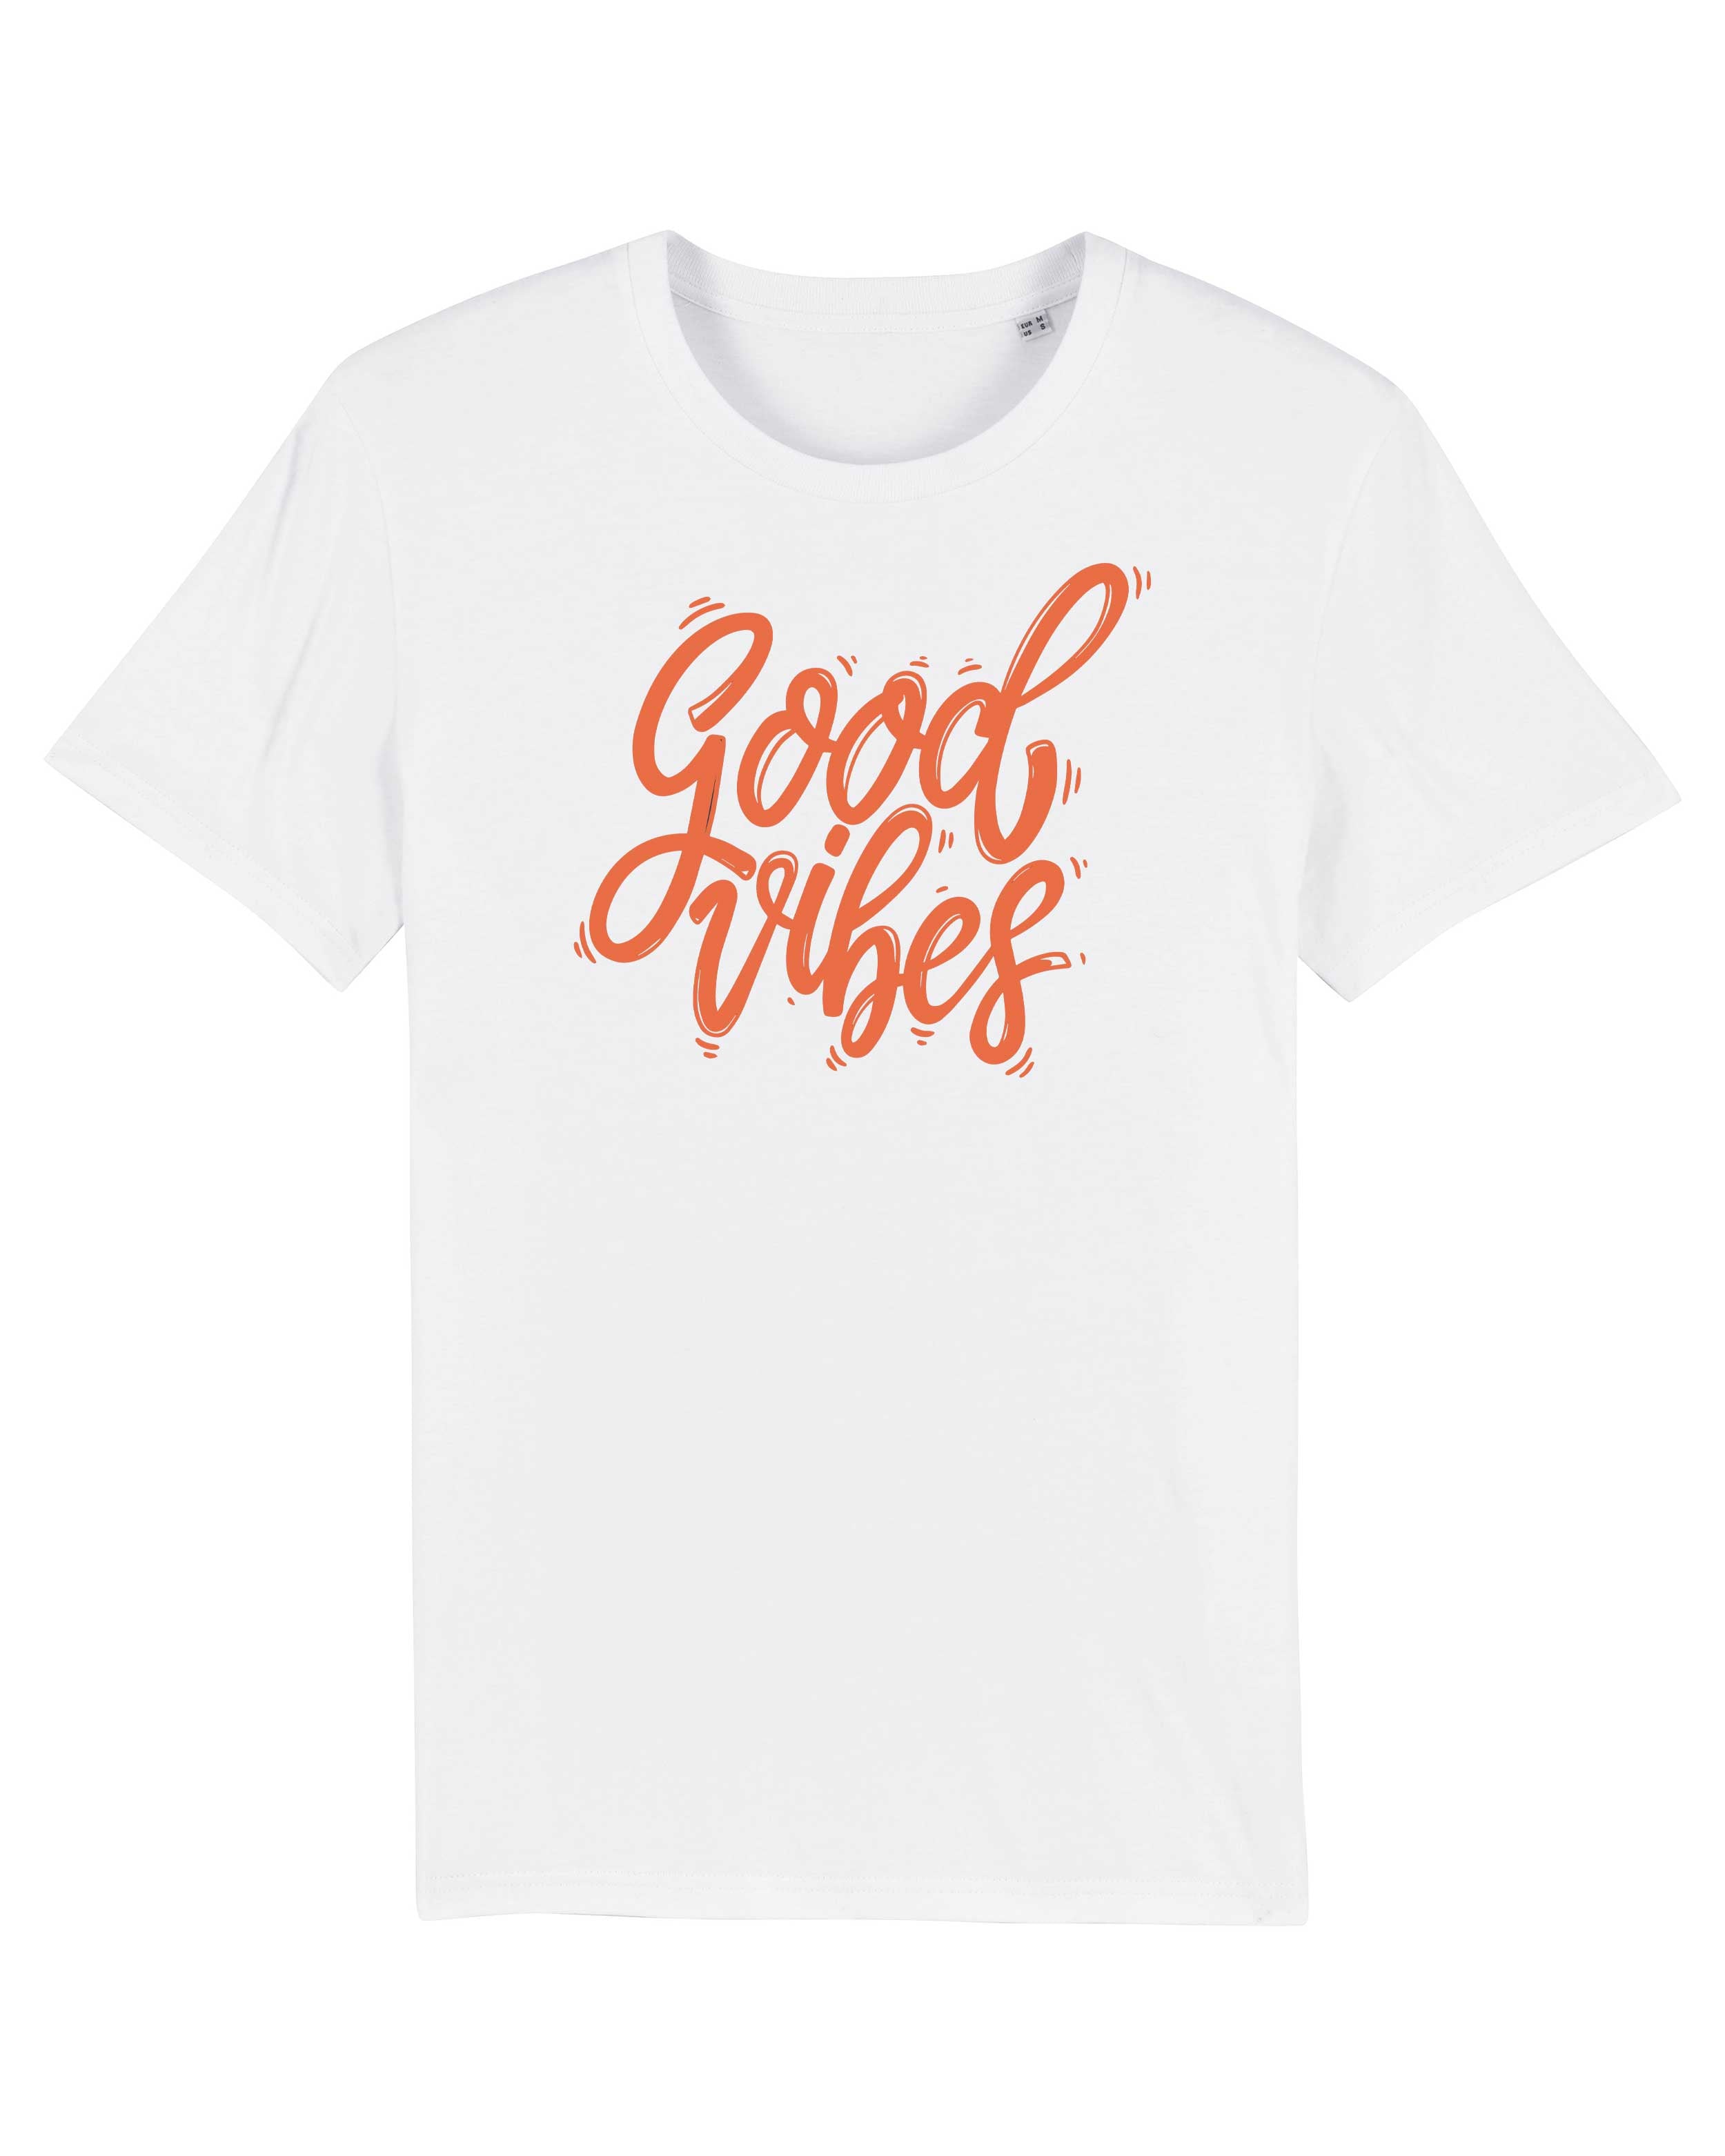 T-Shirt Good Vibes Sprüche, Bio-Baumwolle, Unisex, Damen, Kids